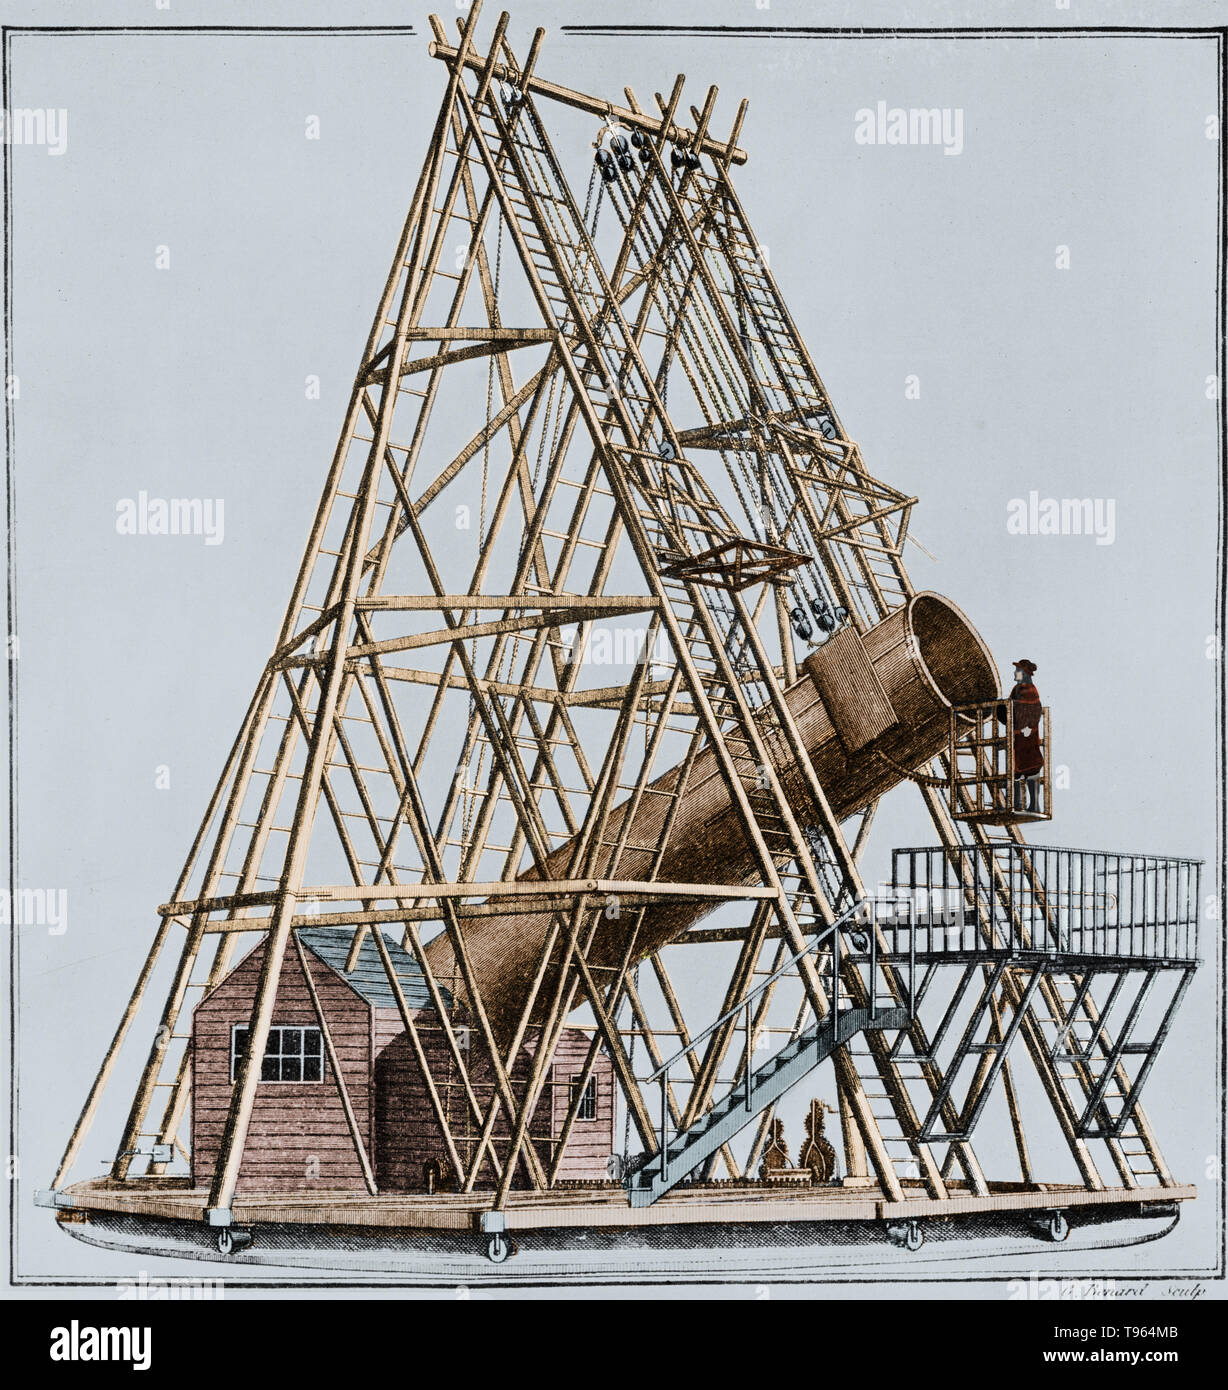 William Herschel 40-Fuß-Teleskop, auch als der Große Forty Foot Teleskop  bekannt, war ein spiegelteleskop zwischen 1785 und 1789 an der Sternwarte  in Slough, England gebaut. Es verwendet einen 47 Zoll Durchmesser  Hauptspiegel